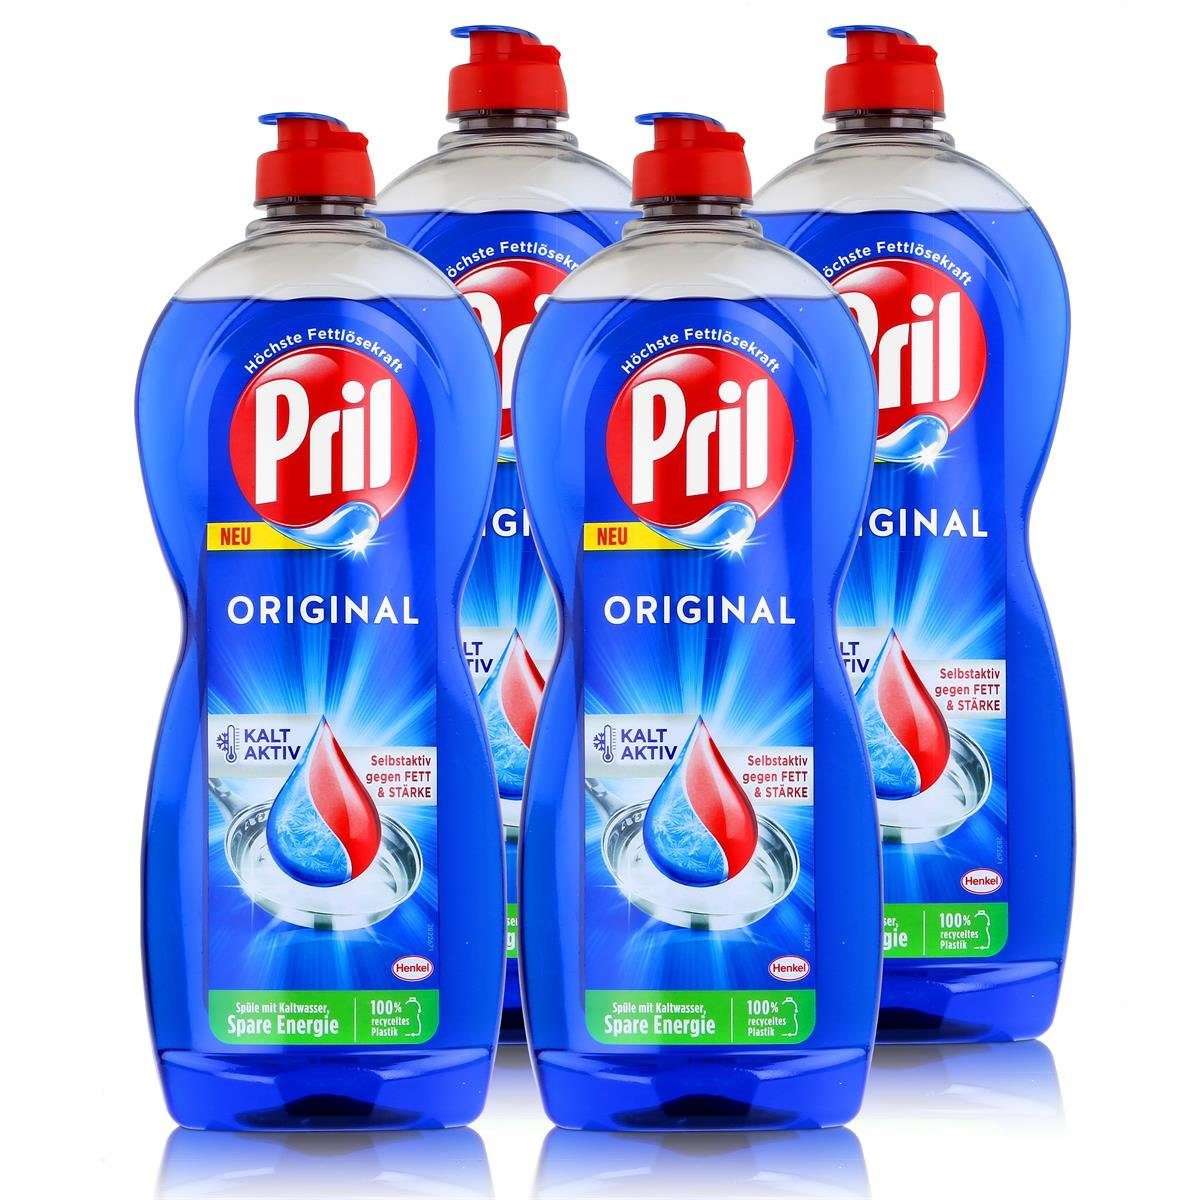 PRIL Pril Spülmittel Original 675ml - Hohe Fettlösekraft (4er Pack) Geschirrspülmittel